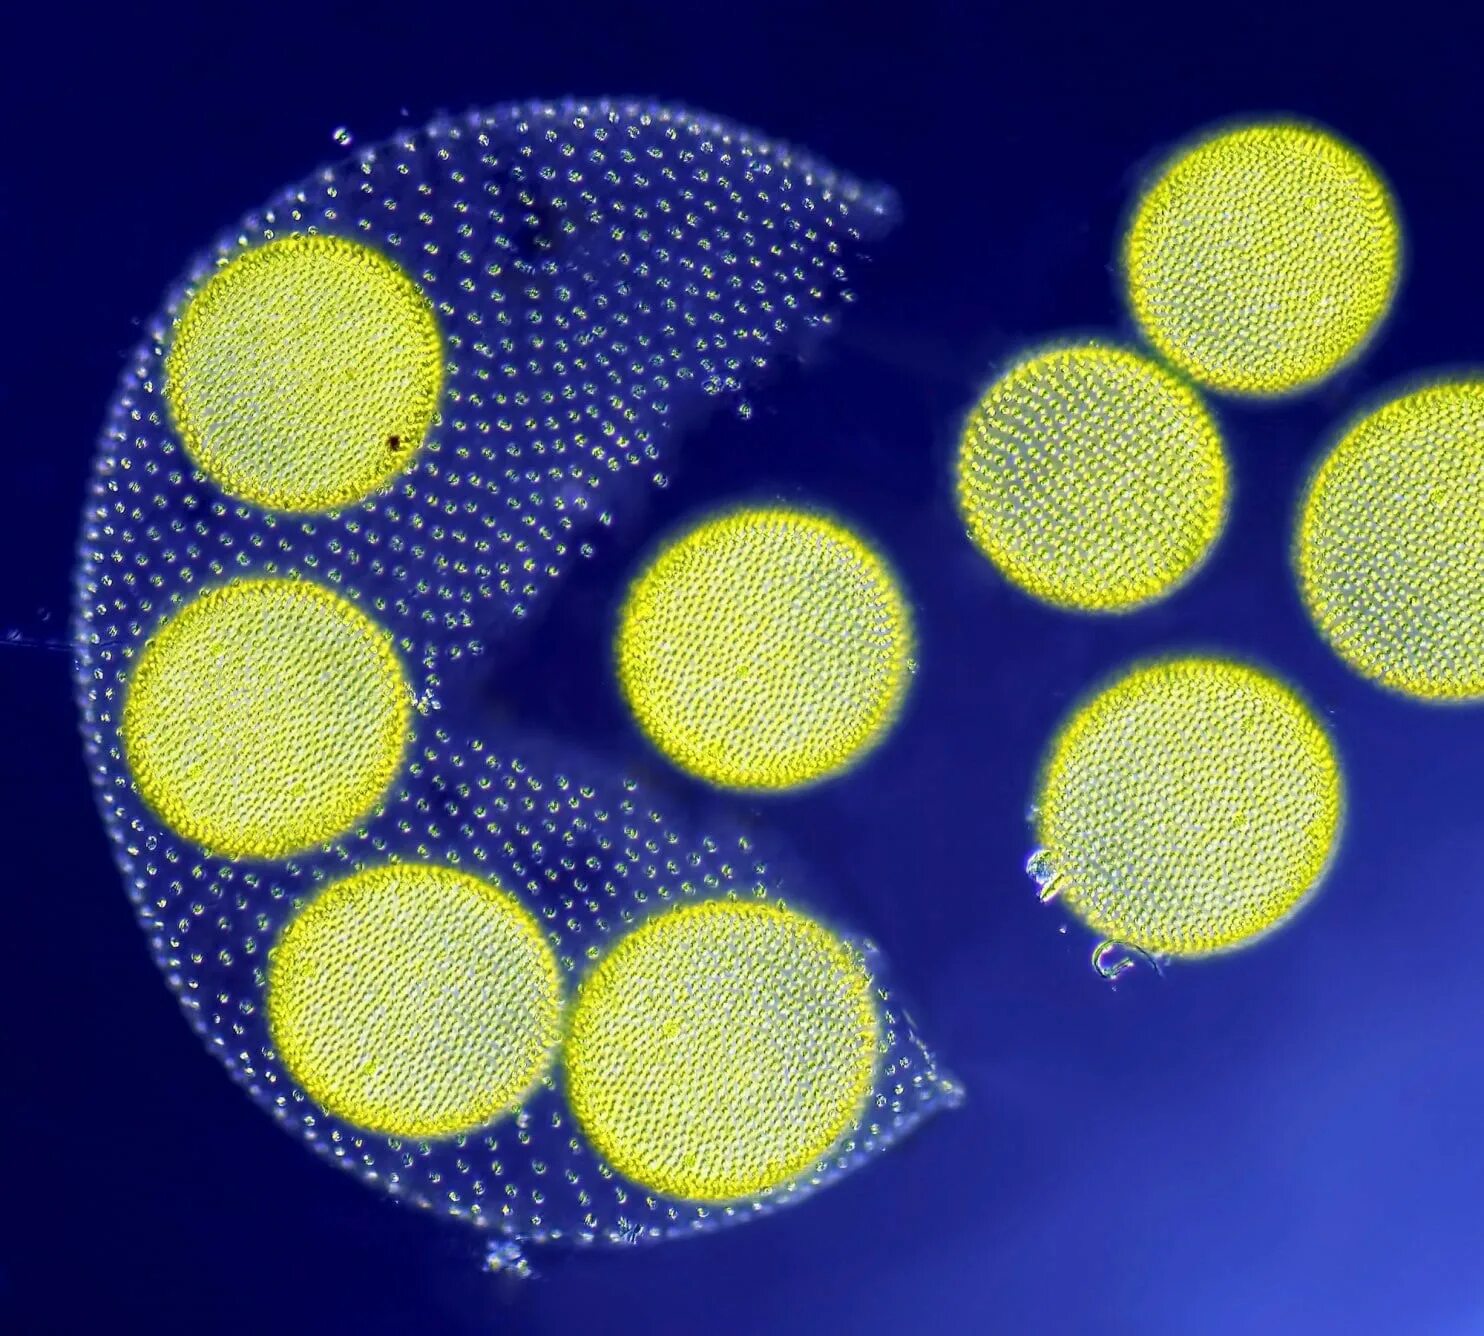 Организм вольвокс. Колониальный вольвокс. Вольвокс водоросль. Зеленые водоросли вольвокс. Колония вольвокса под микроскопом.